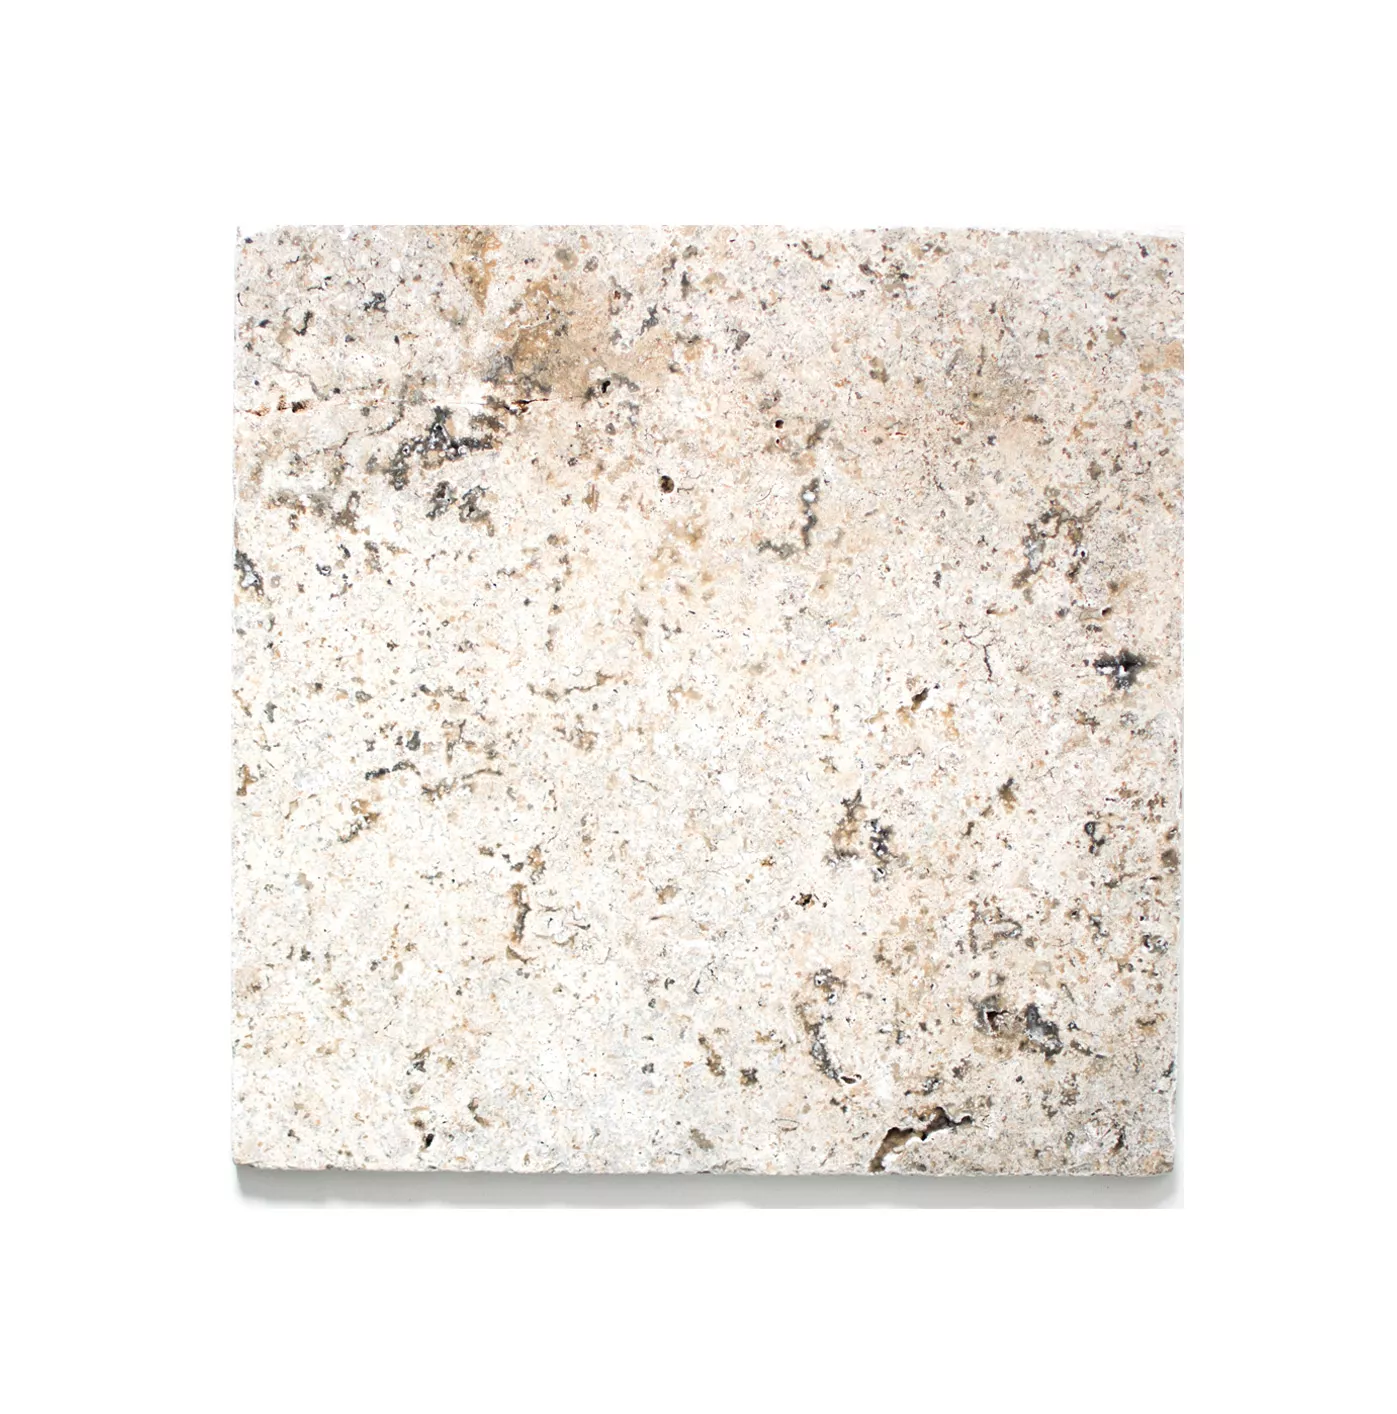 Πλακάκια Aπό Φυσική Πέτρα Είδος Ασβεστόλιθου Nestor Ασήμι 30,5x30,5cm